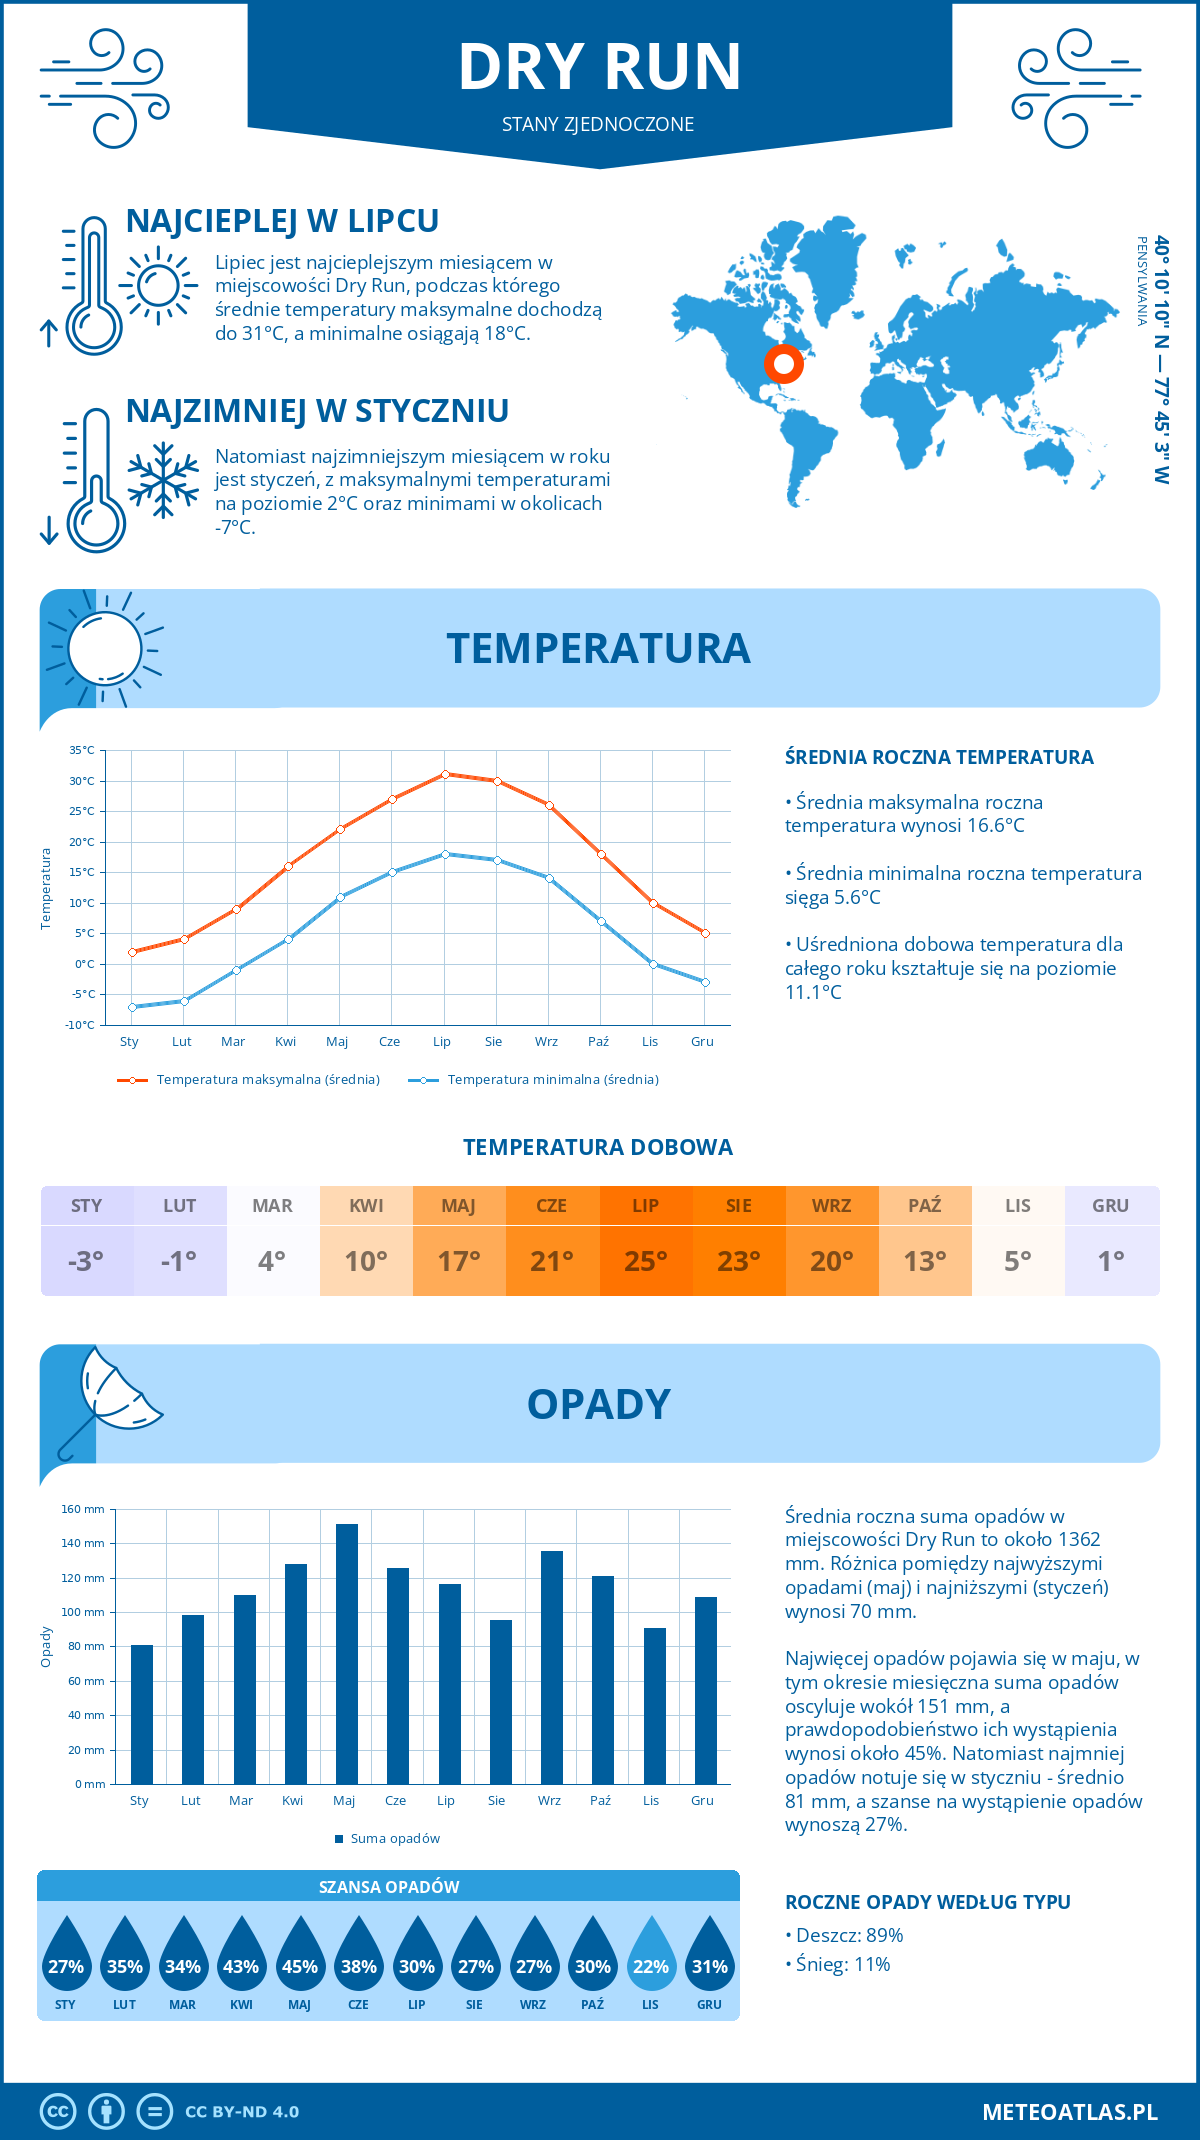 Pogoda Dry Run (Stany Zjednoczone). Temperatura oraz opady.